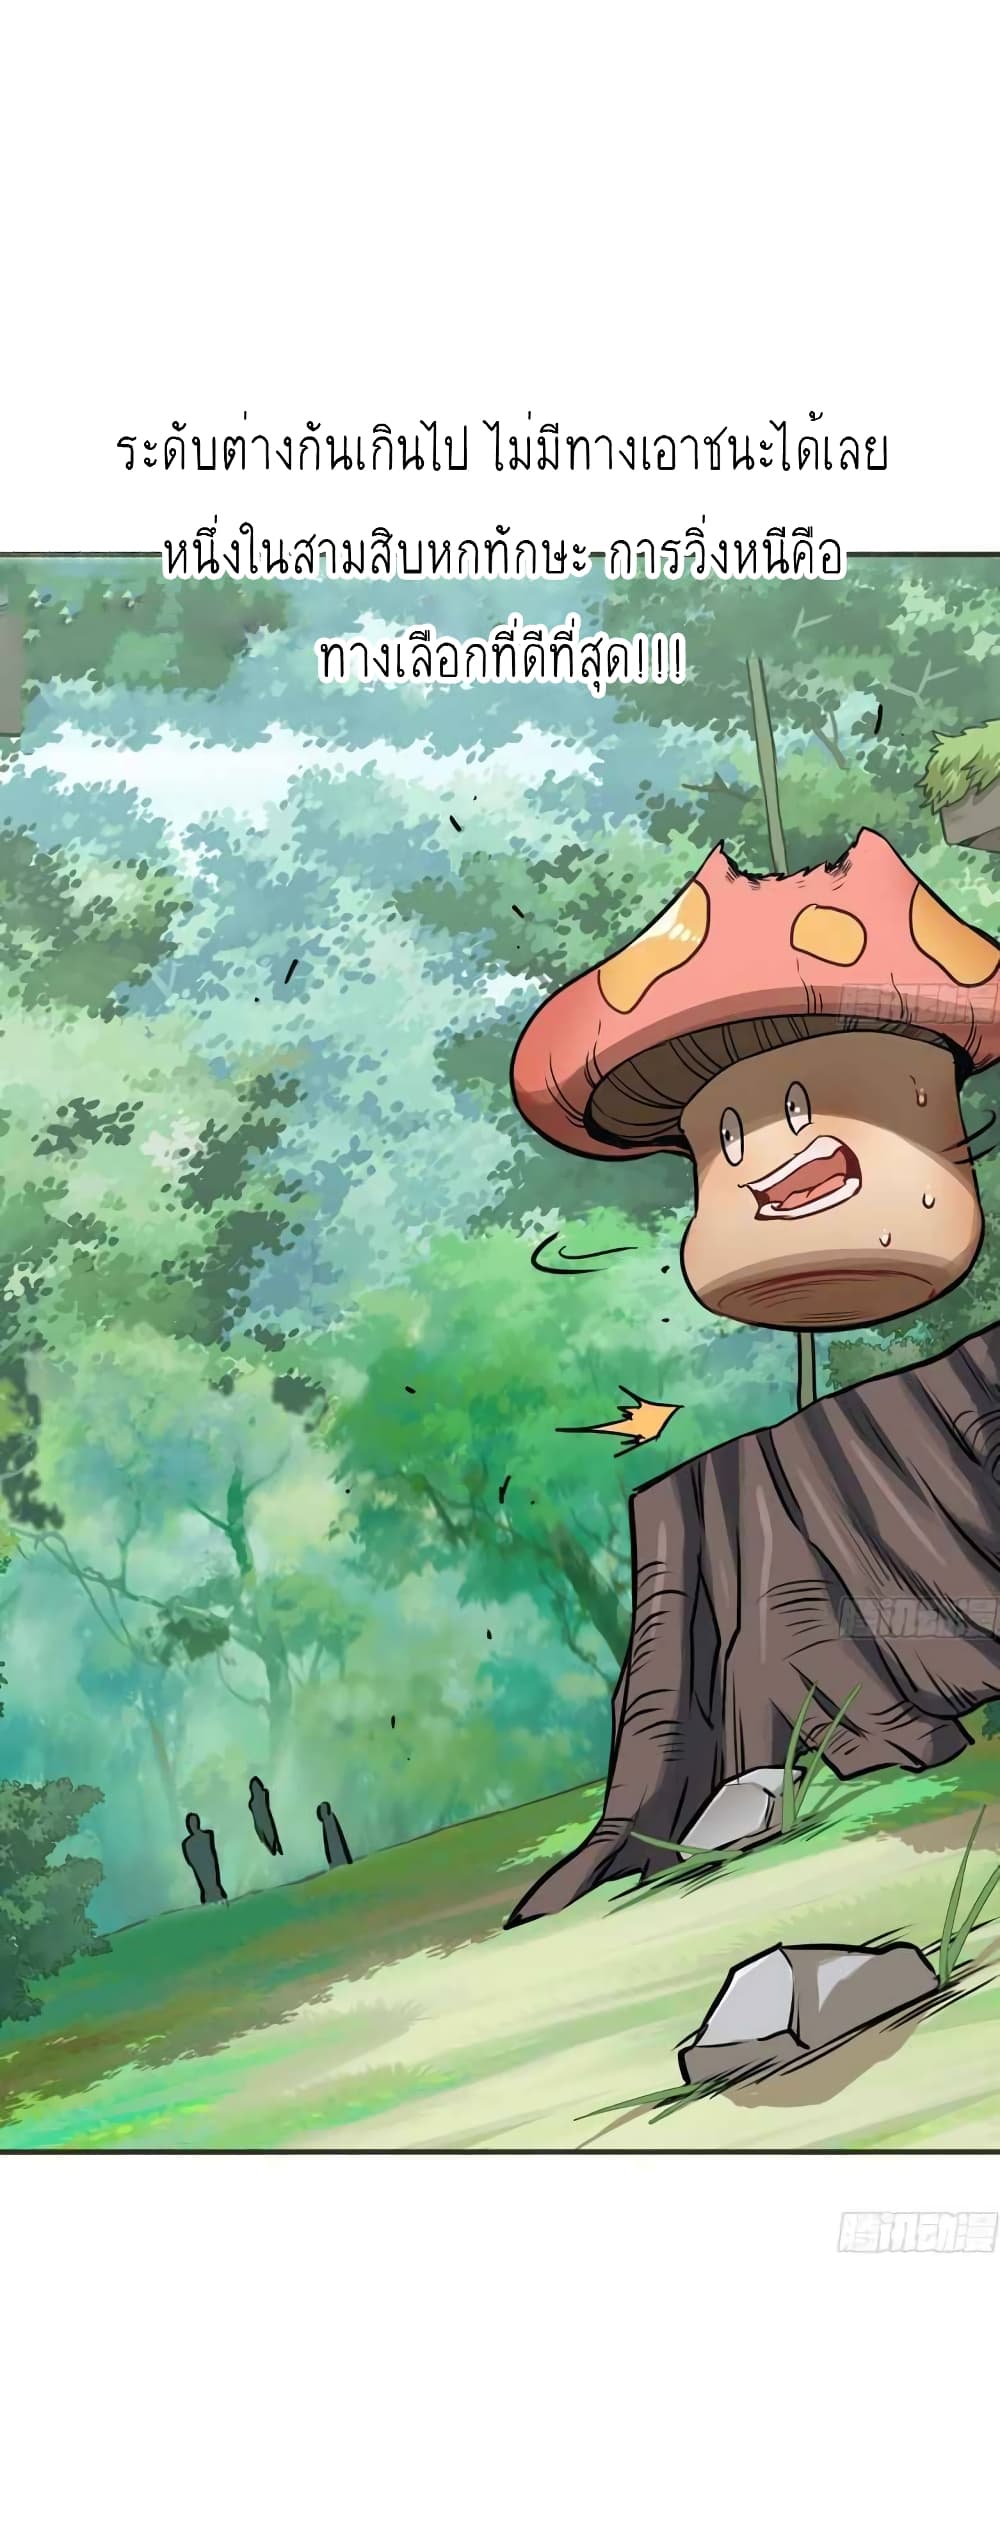 Mushroom Brave6 (7)